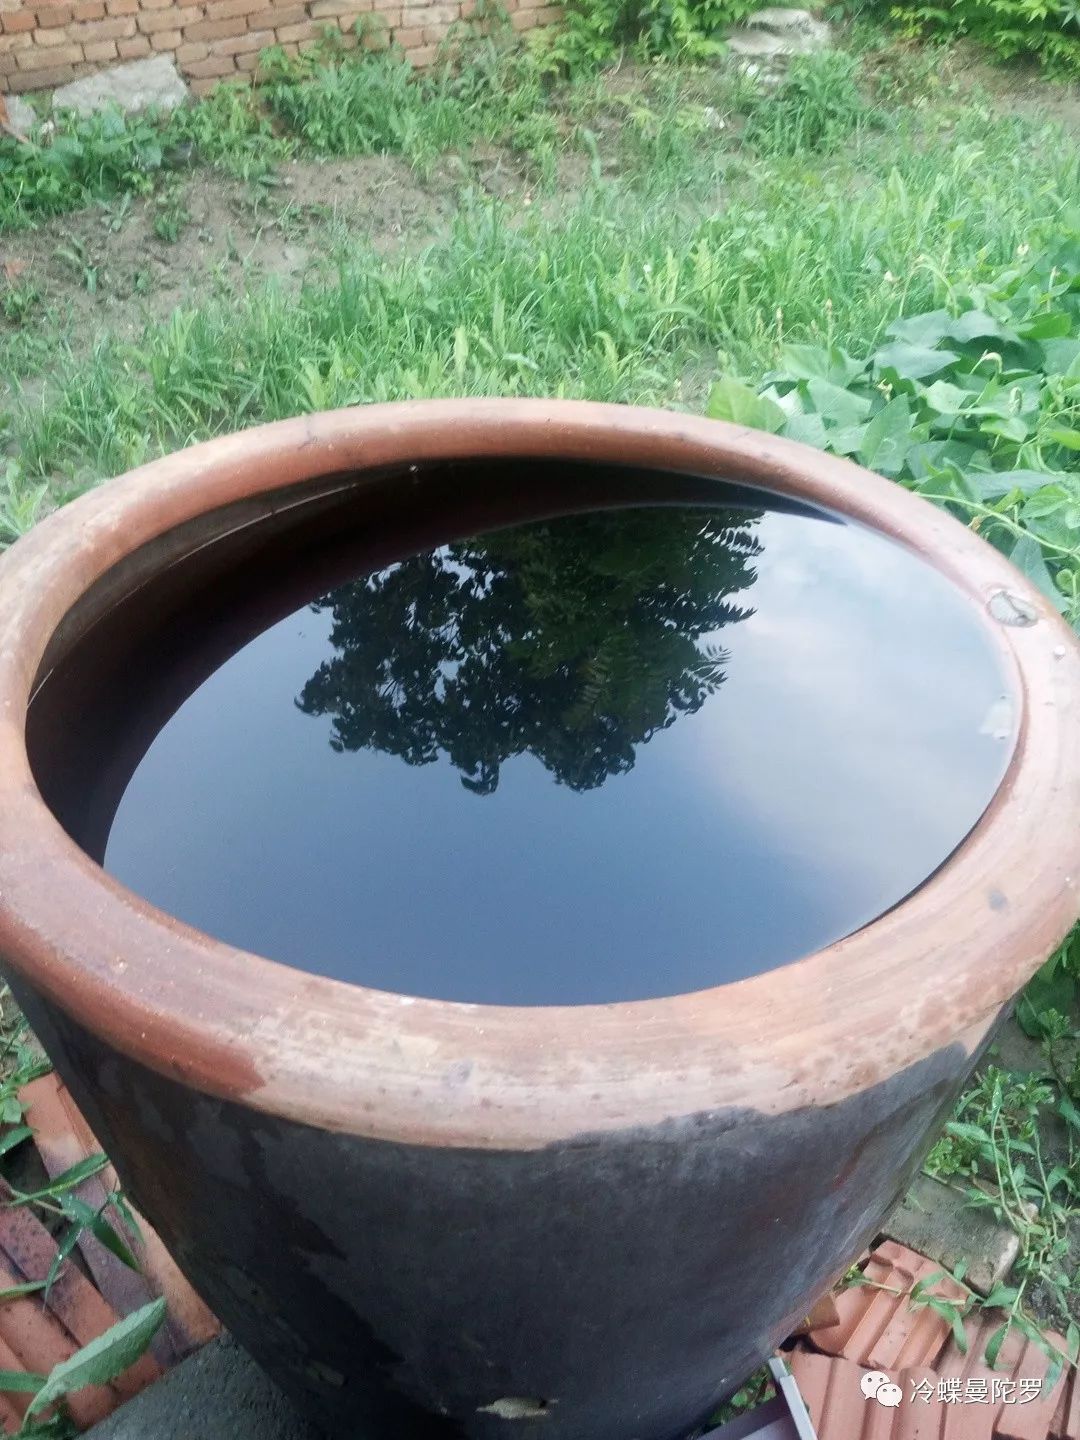 这个东西在我们这边叫"瓮,盛水用的~家门外小菜园旁边放着一个,里面